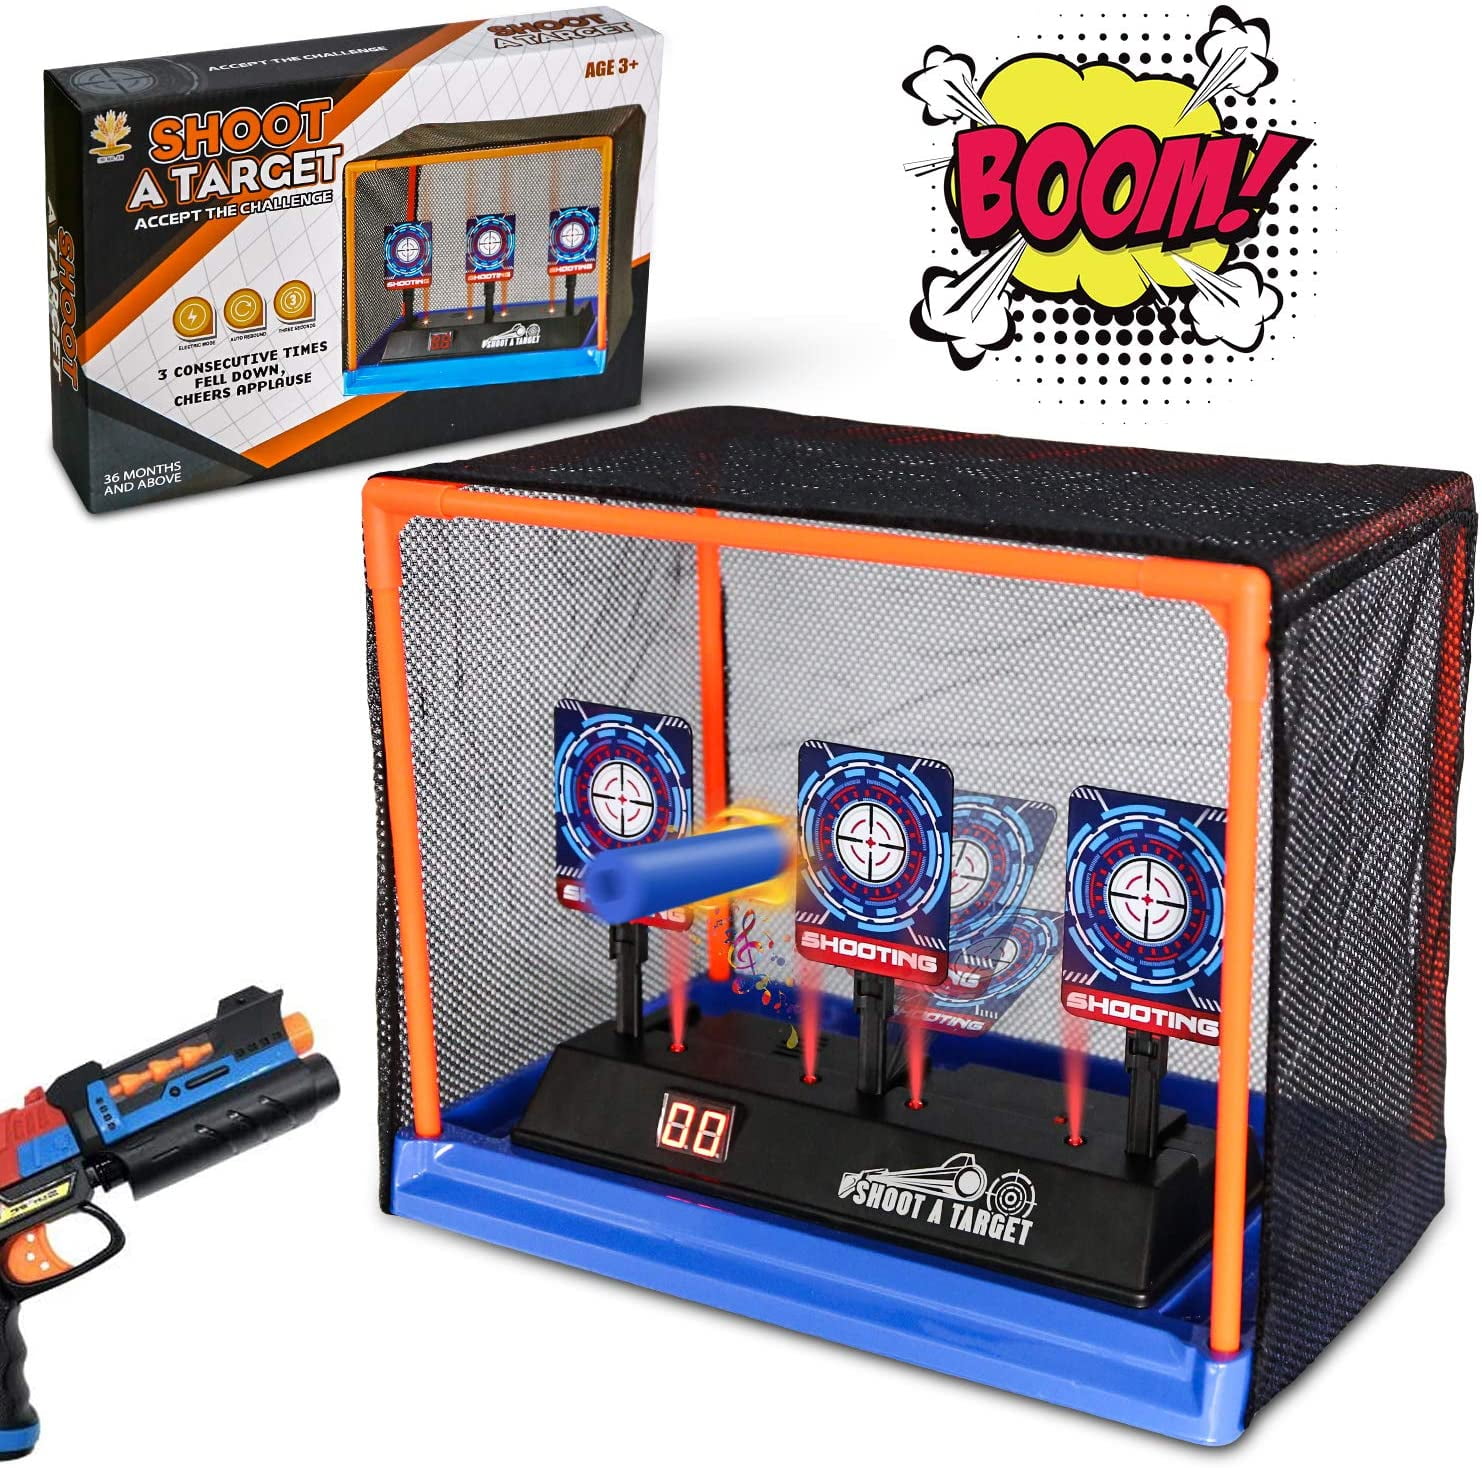 Electric Scoring Auto Reset Shooting Game Digital Target for Nerf Gun Toy Gift 